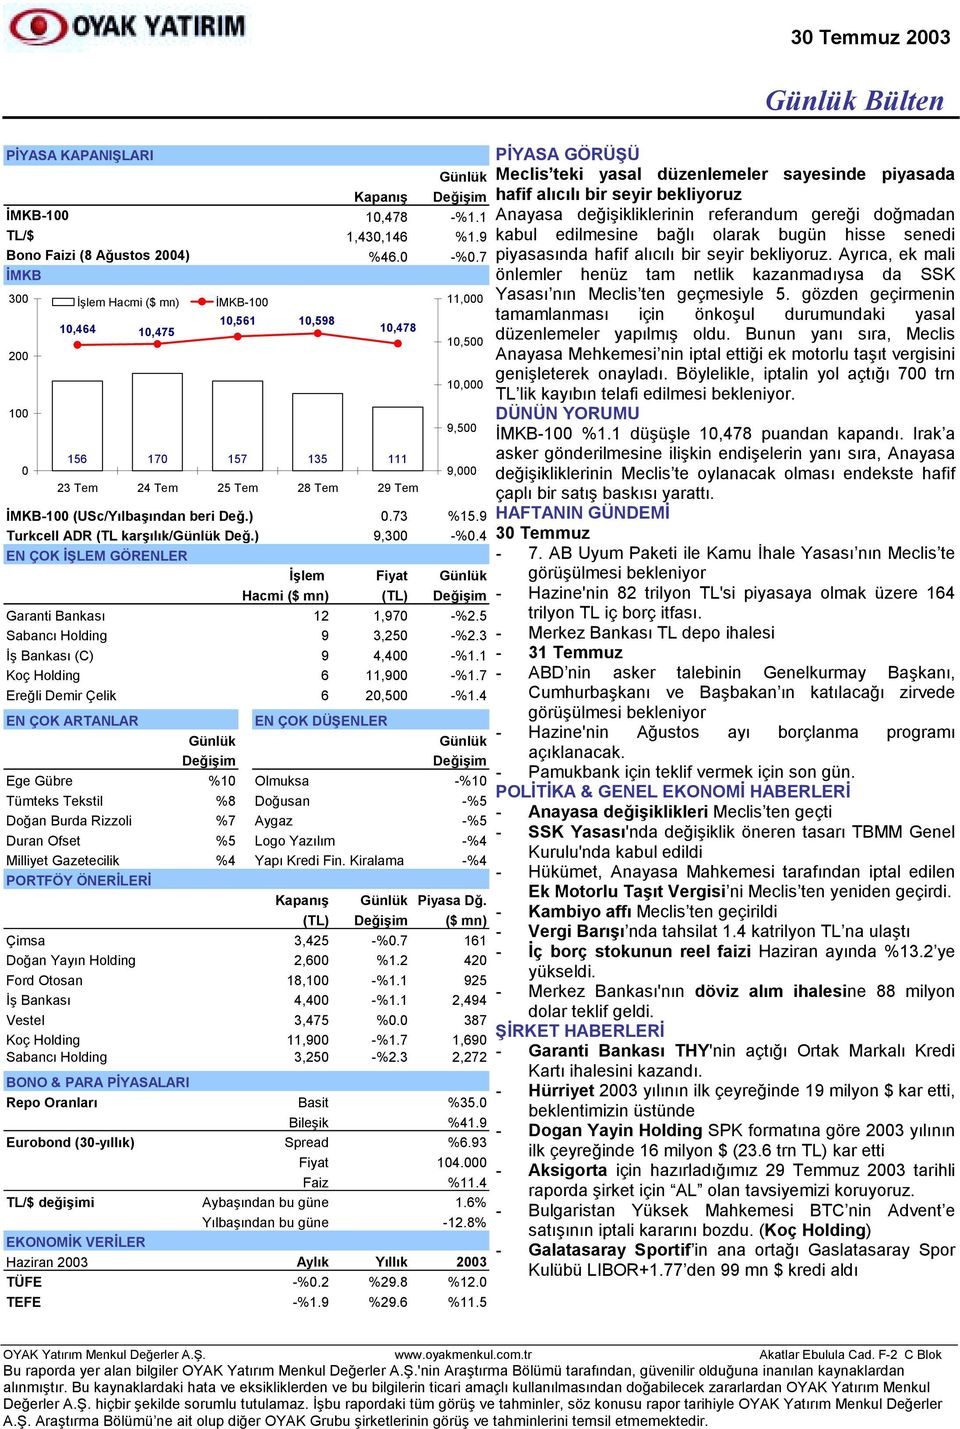 9 Turkcell ADR (TL karşõlõk/ Değ.) 9,300 -%0.4 EN ÇOK İŞLEM GÖRENLER İşlem Fiyat Hacmi ($ mn) (TL) Değişim Garanti Bankasõ 12 1,970 -%2.5 Sabancõ Holding 9 3,250 -%2.3 İş Bankasõ (C) 9 4,400 -%1.